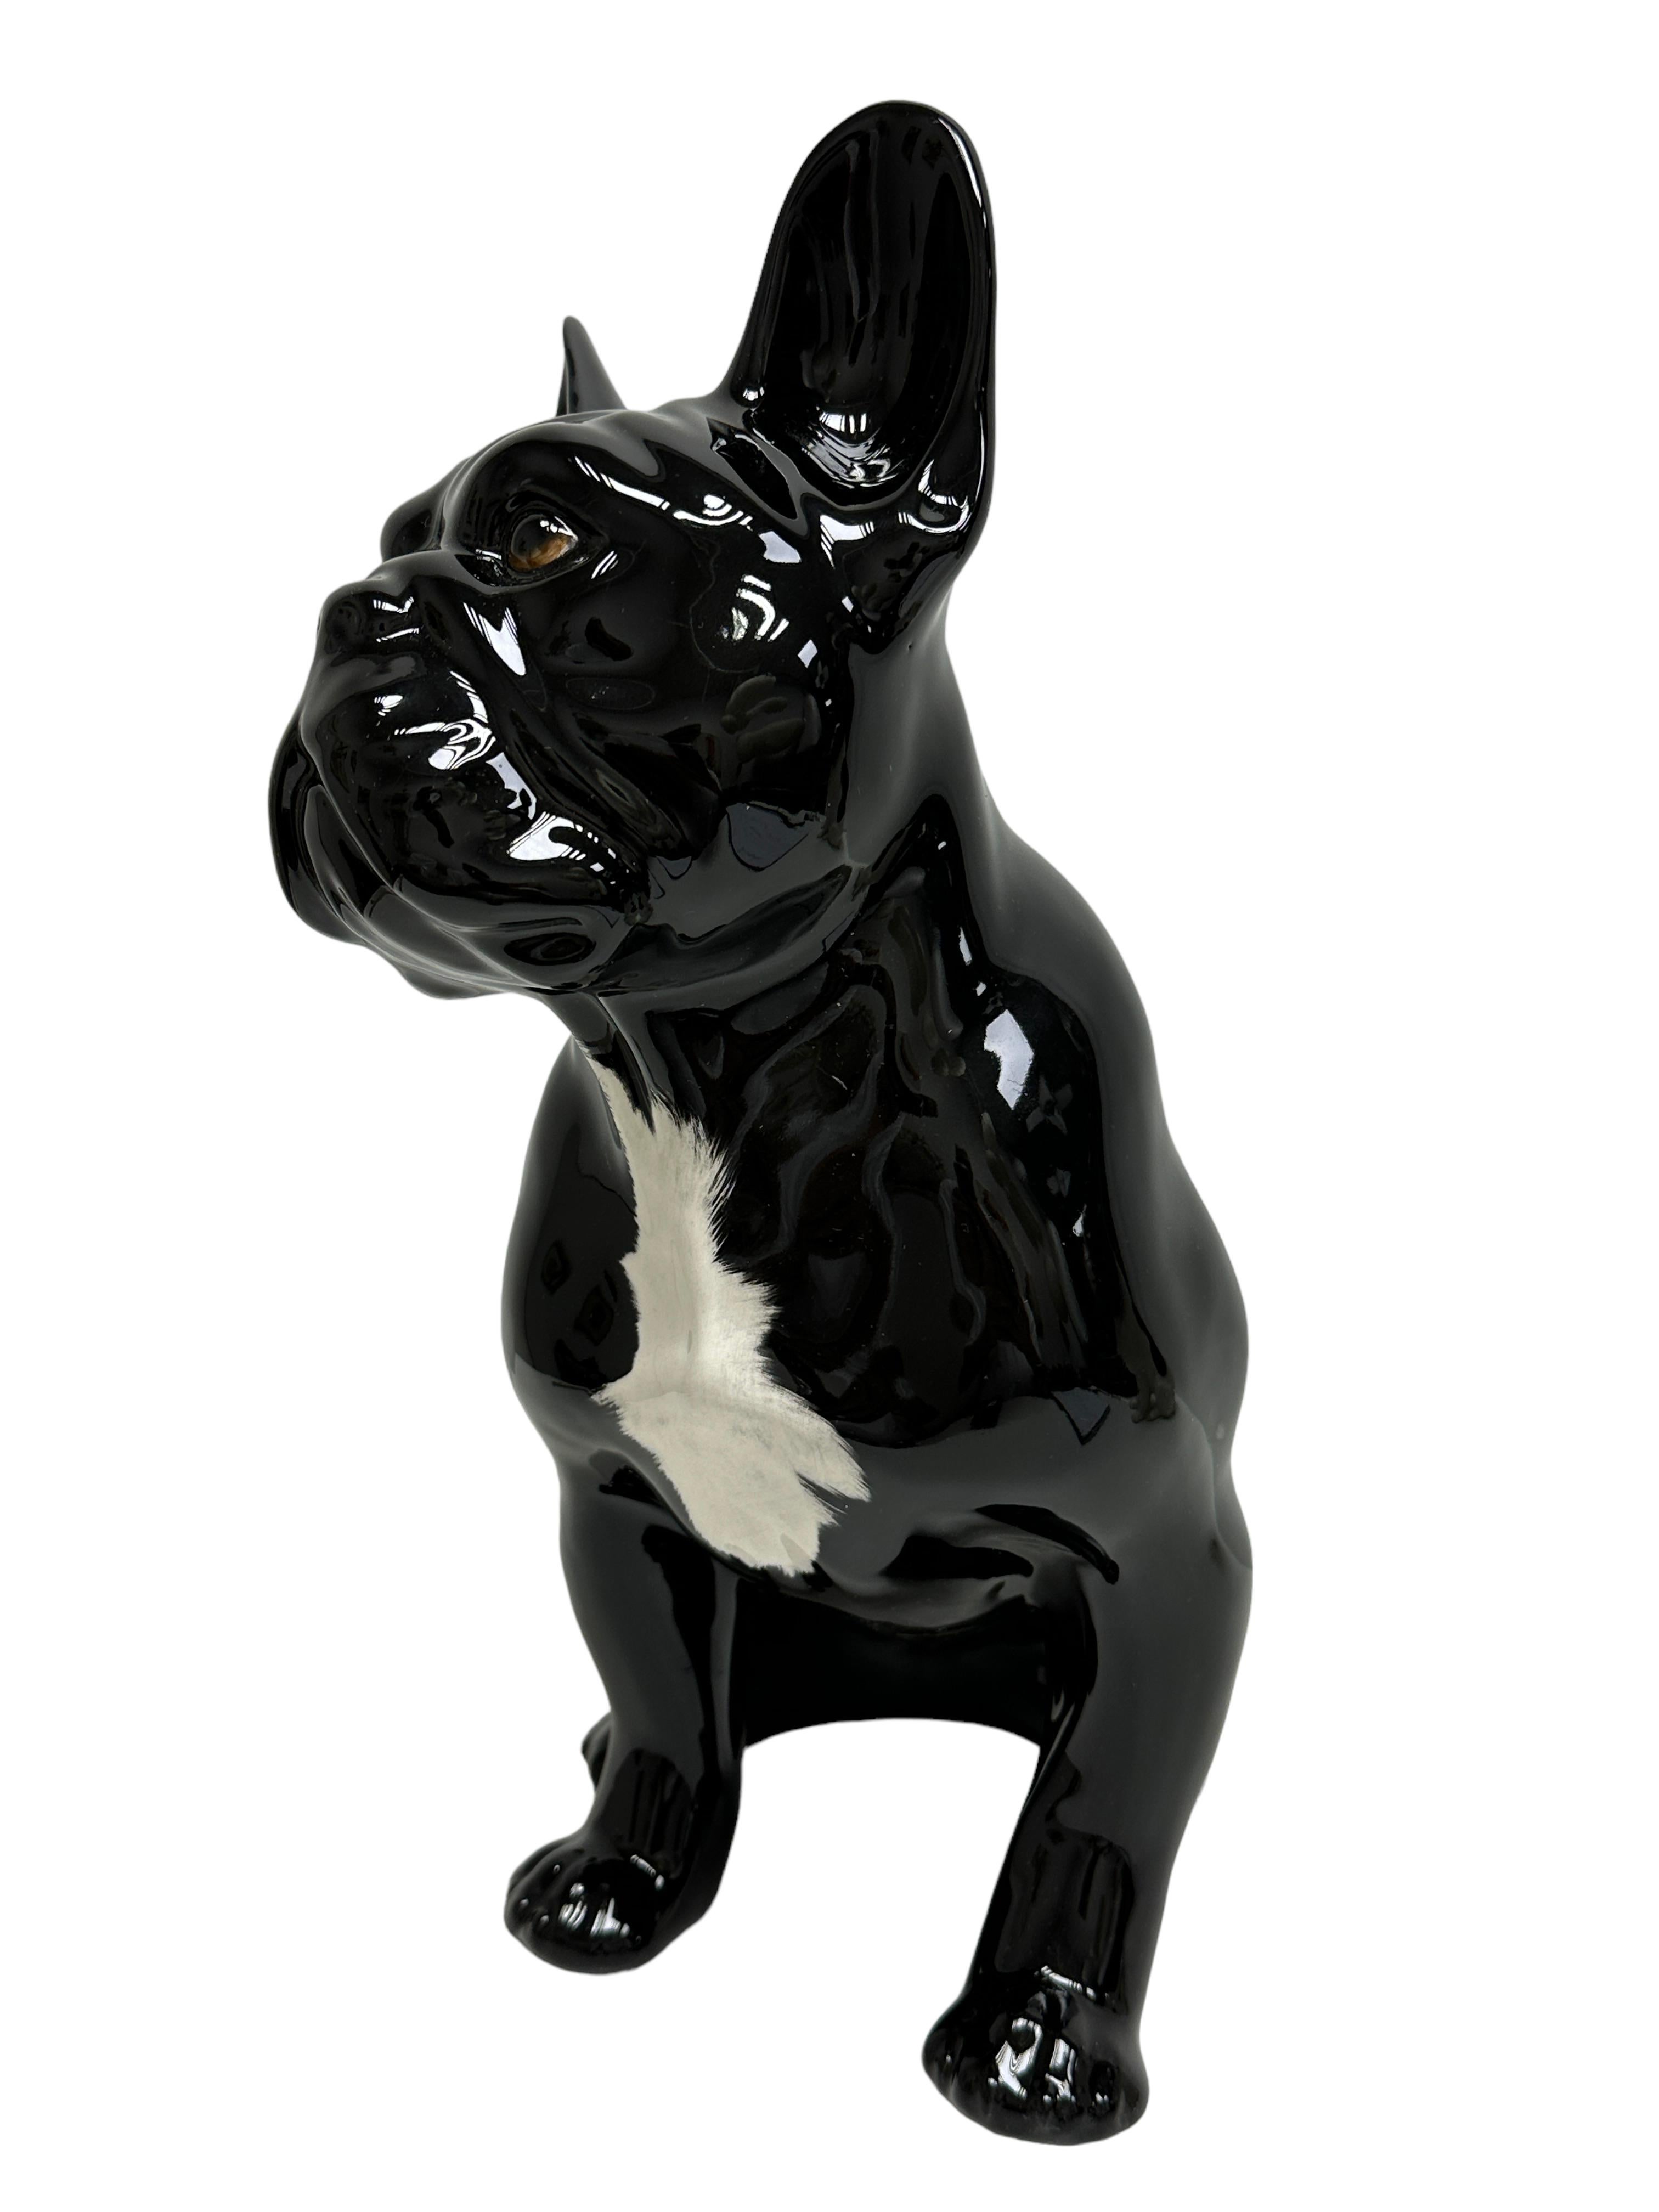 Figurine classique en céramique du 20e siècle, en très bon état. Figurine Statue en forme de chien de taureau dans les tons noir et blanc. Il a été fabriqué probablement dans les années 1980 en Italie, il est marqué au sol.
Joli ajout à votre